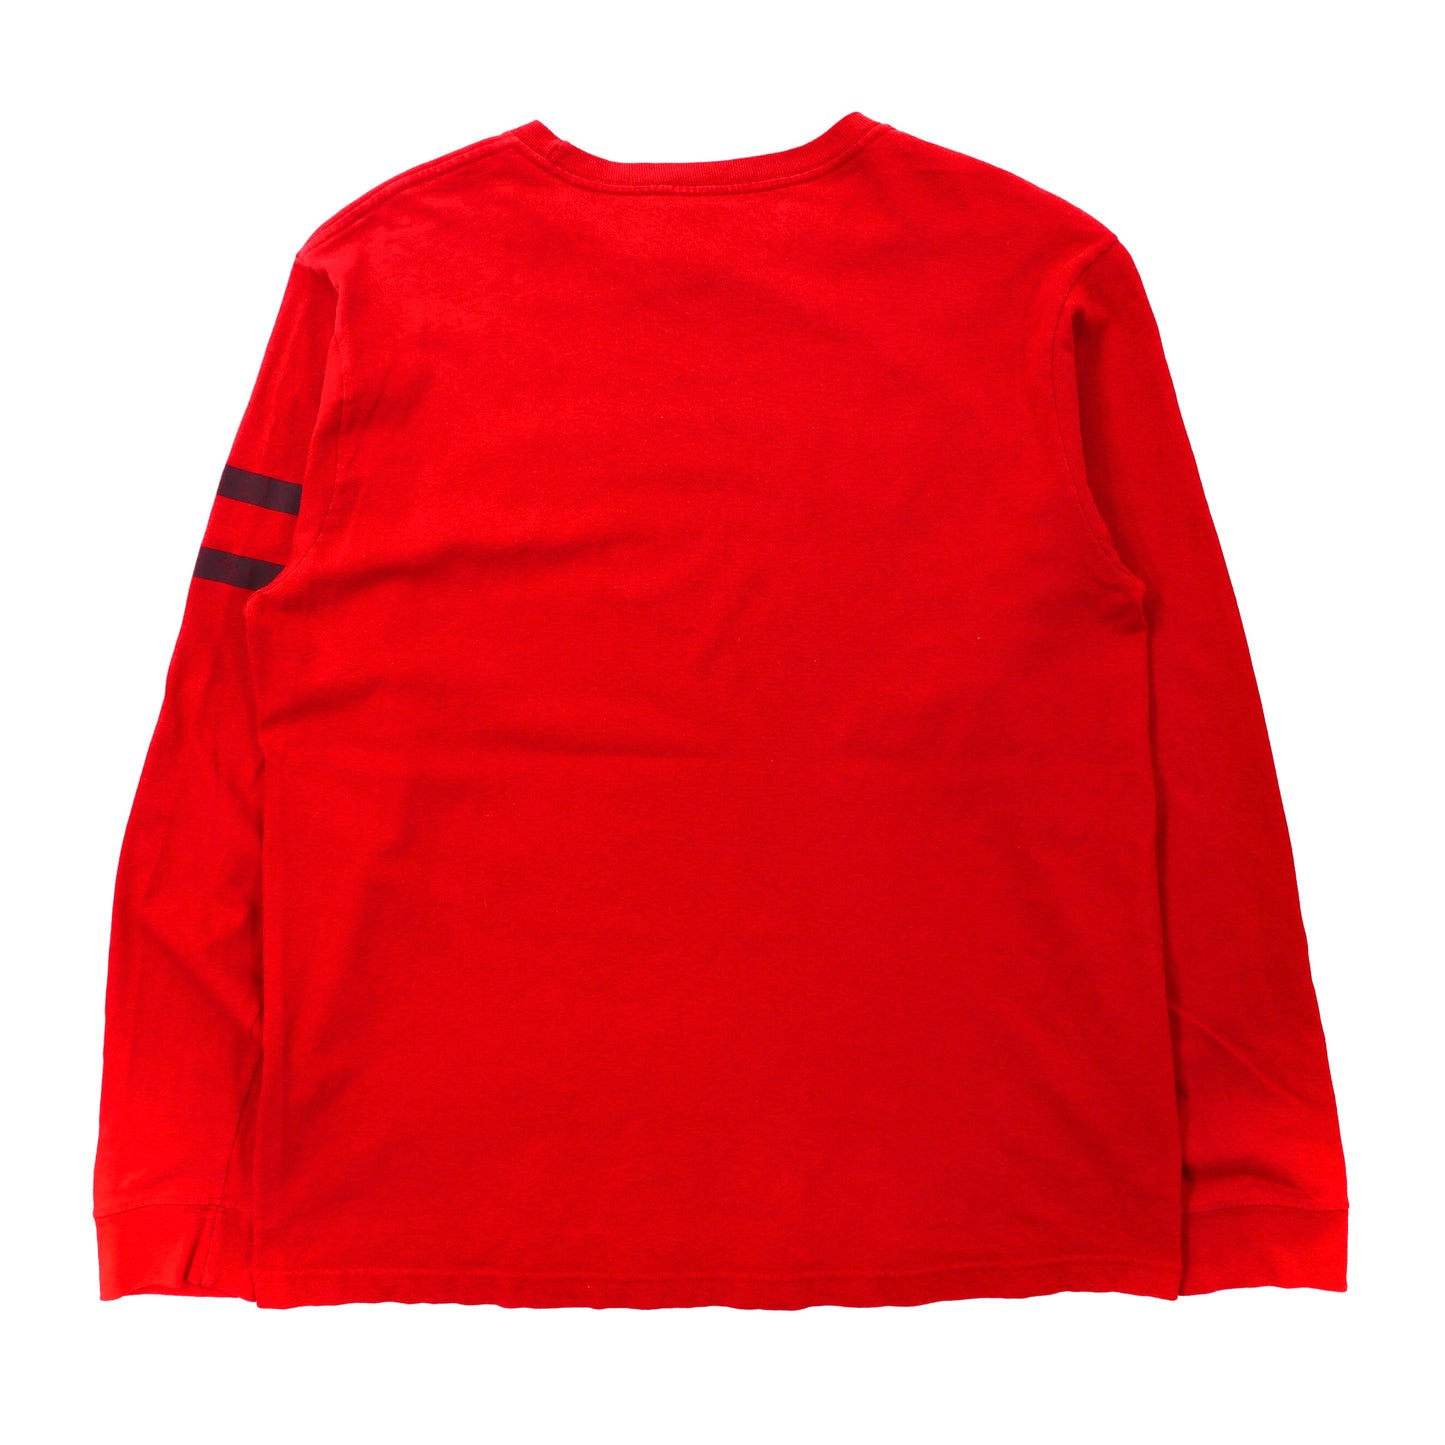 TOMMY JEANS ロングスリーブTシャツ S レッド コットン ビッグサイズ ロゴ 90年代 メキシコ製